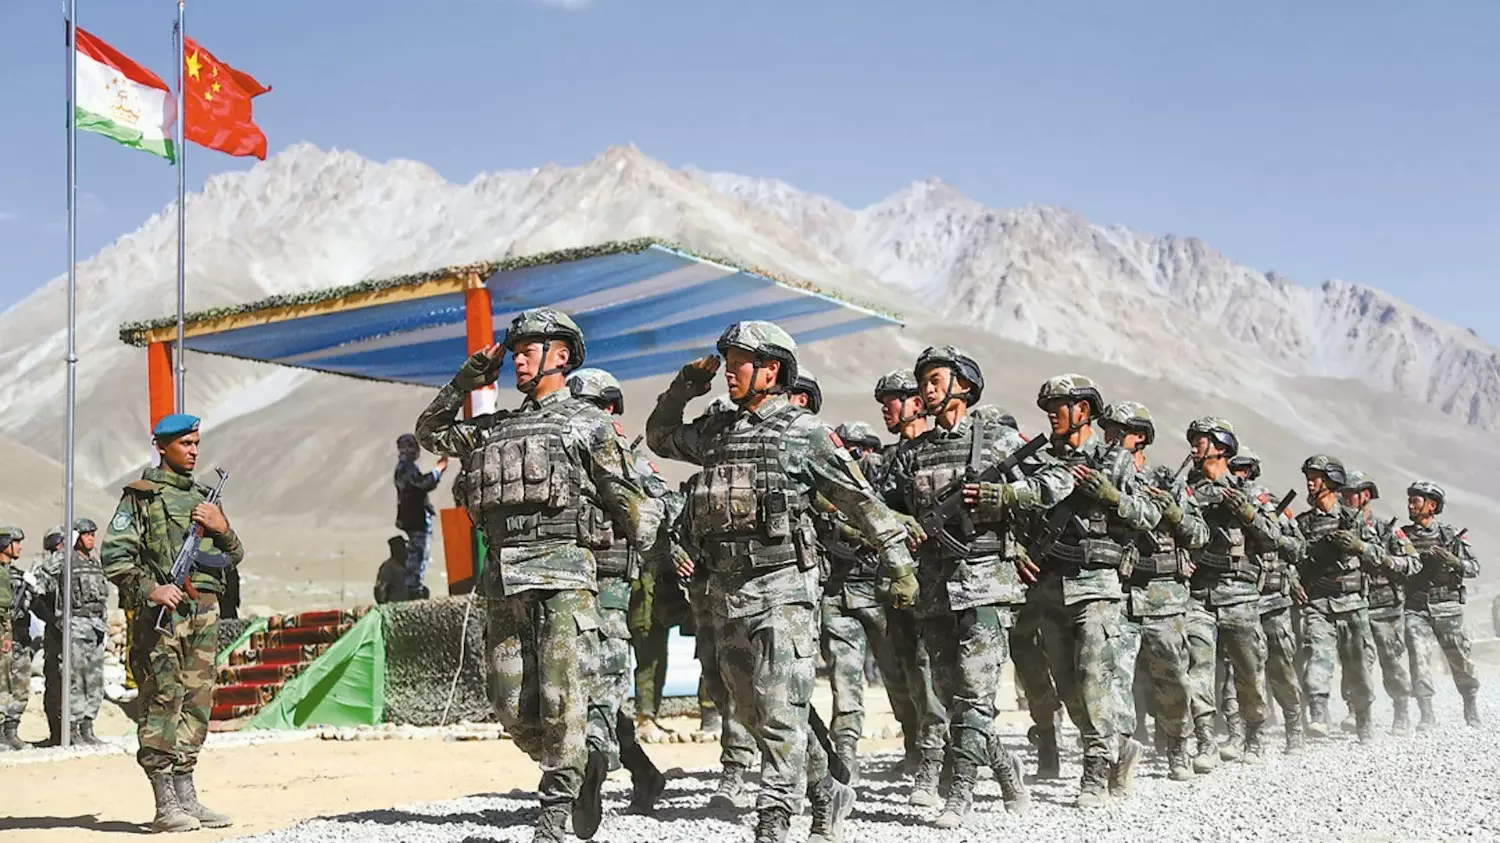 Единственное, что нужно Китаю от Таджикистана, так это поддержание безопасности на их общей границе